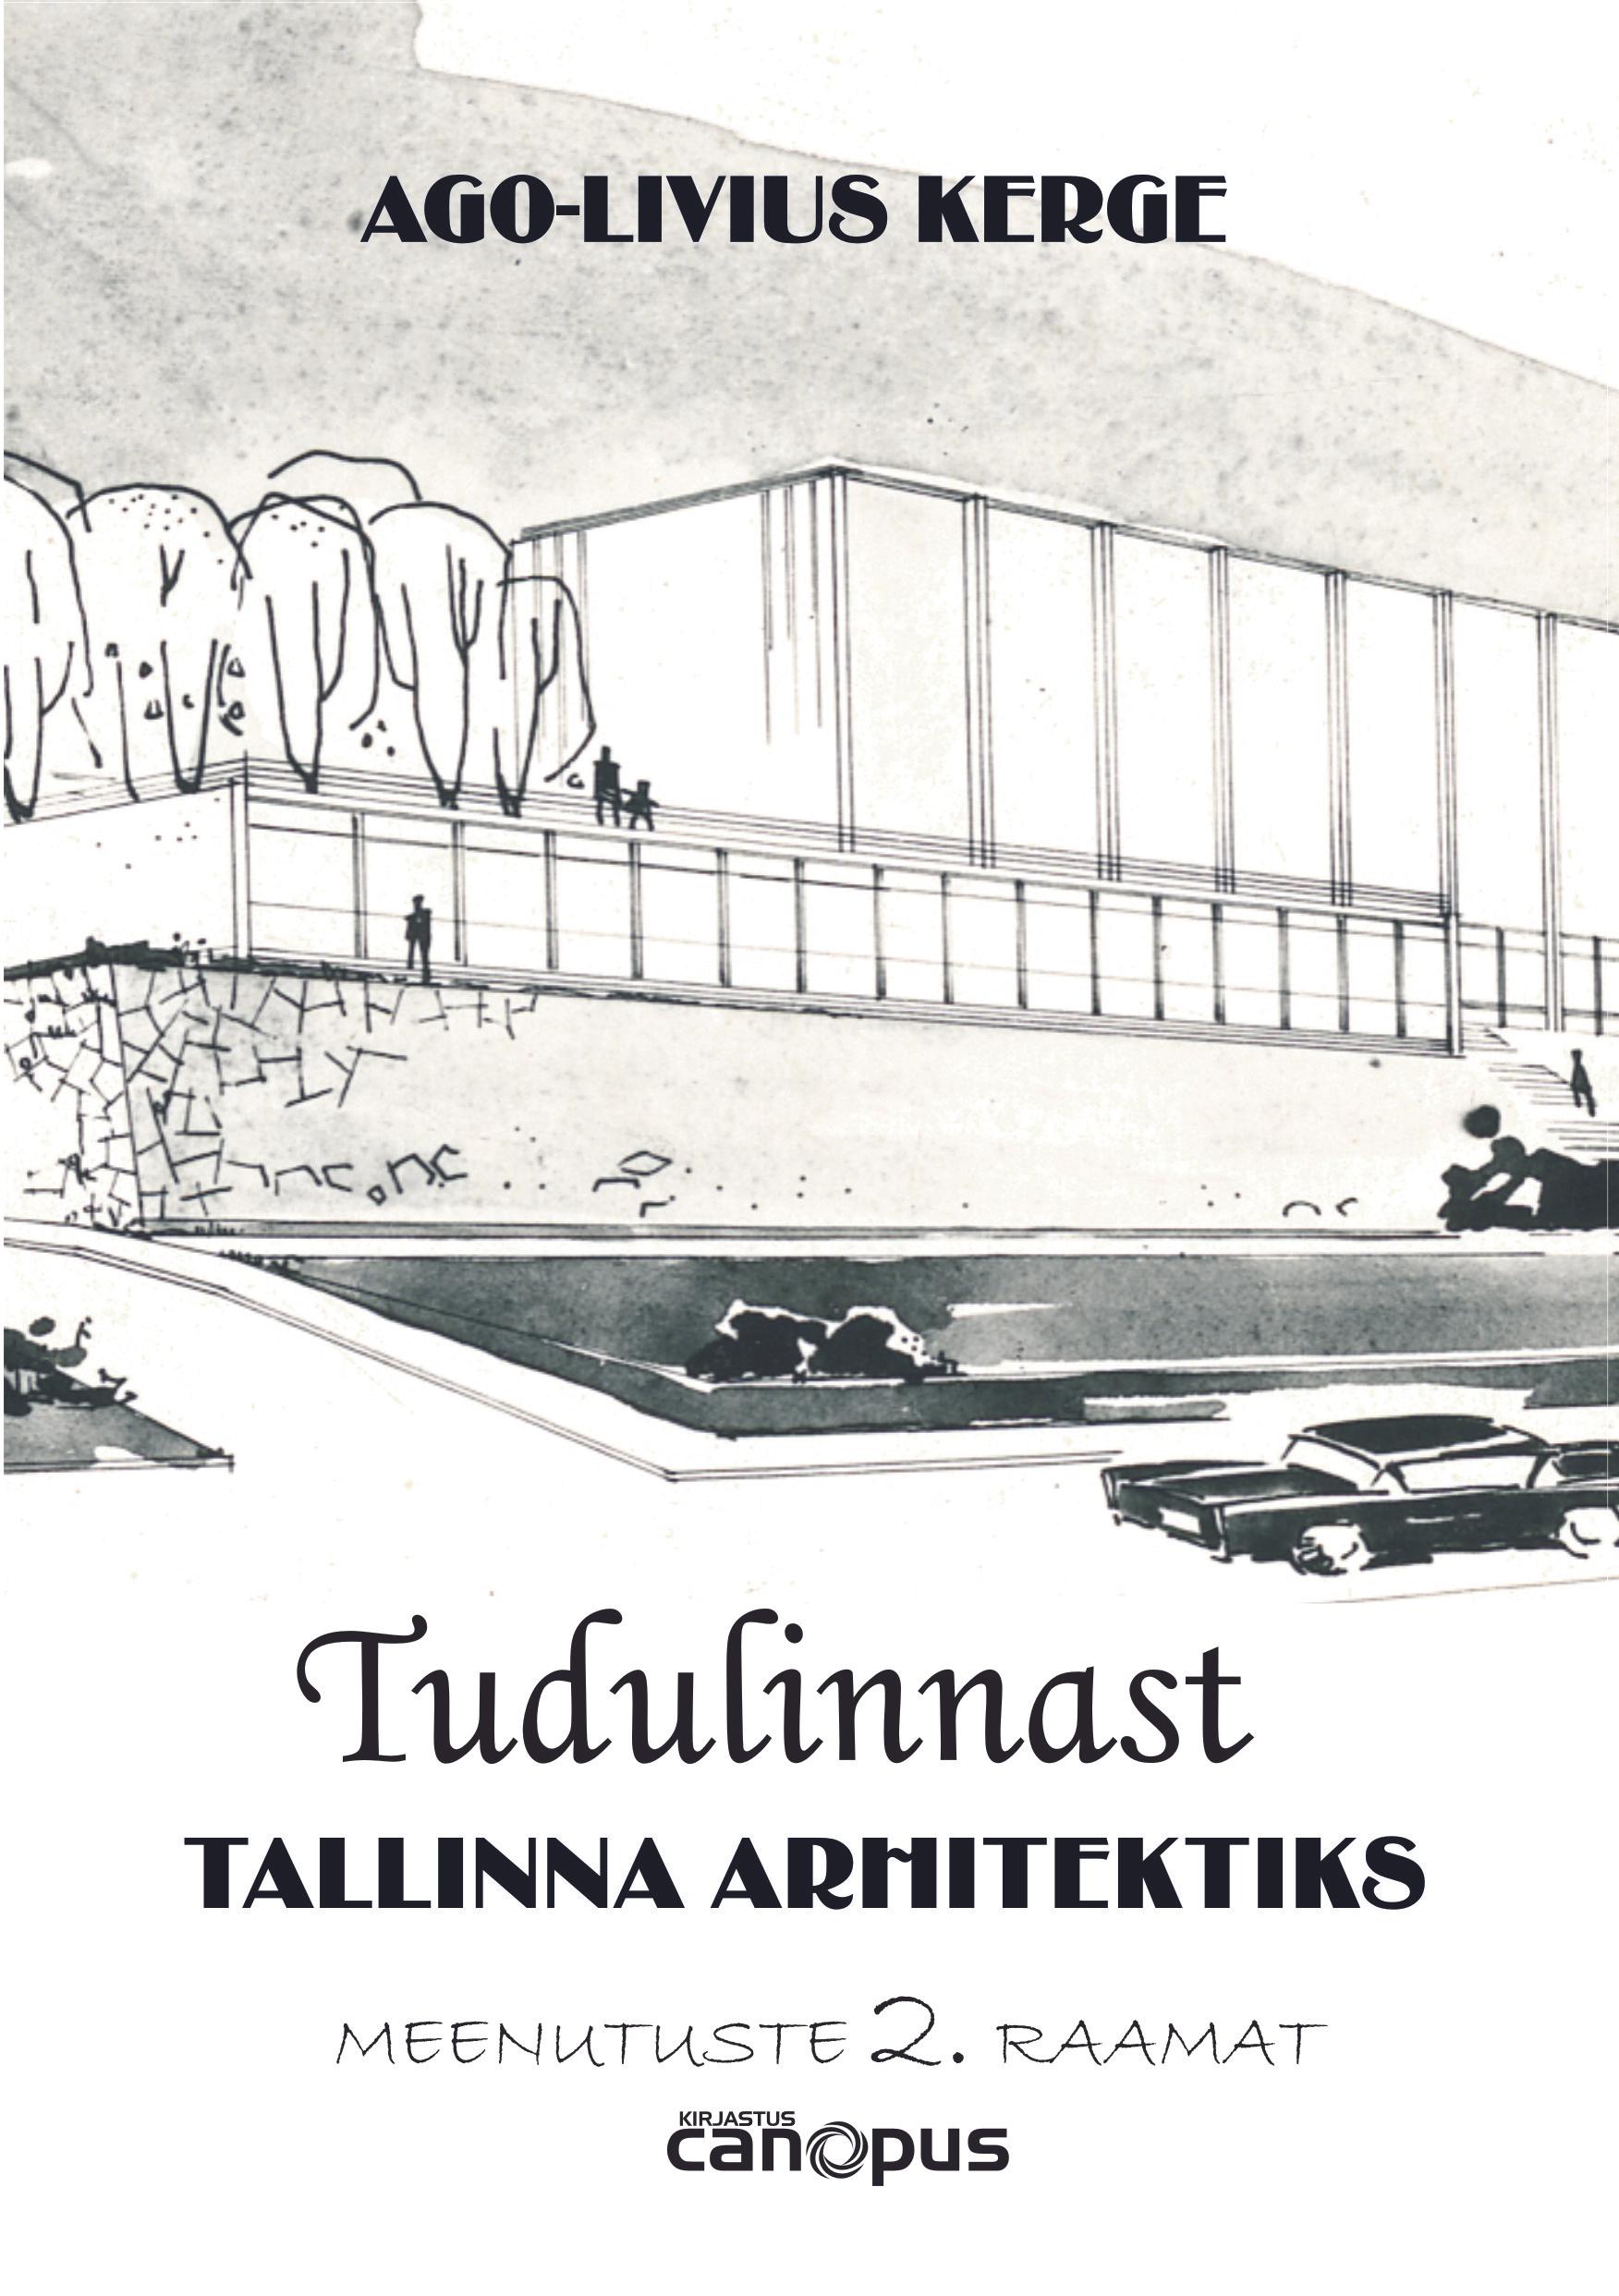 TUDULINNAST TALLINNA ARHITEKTIKS